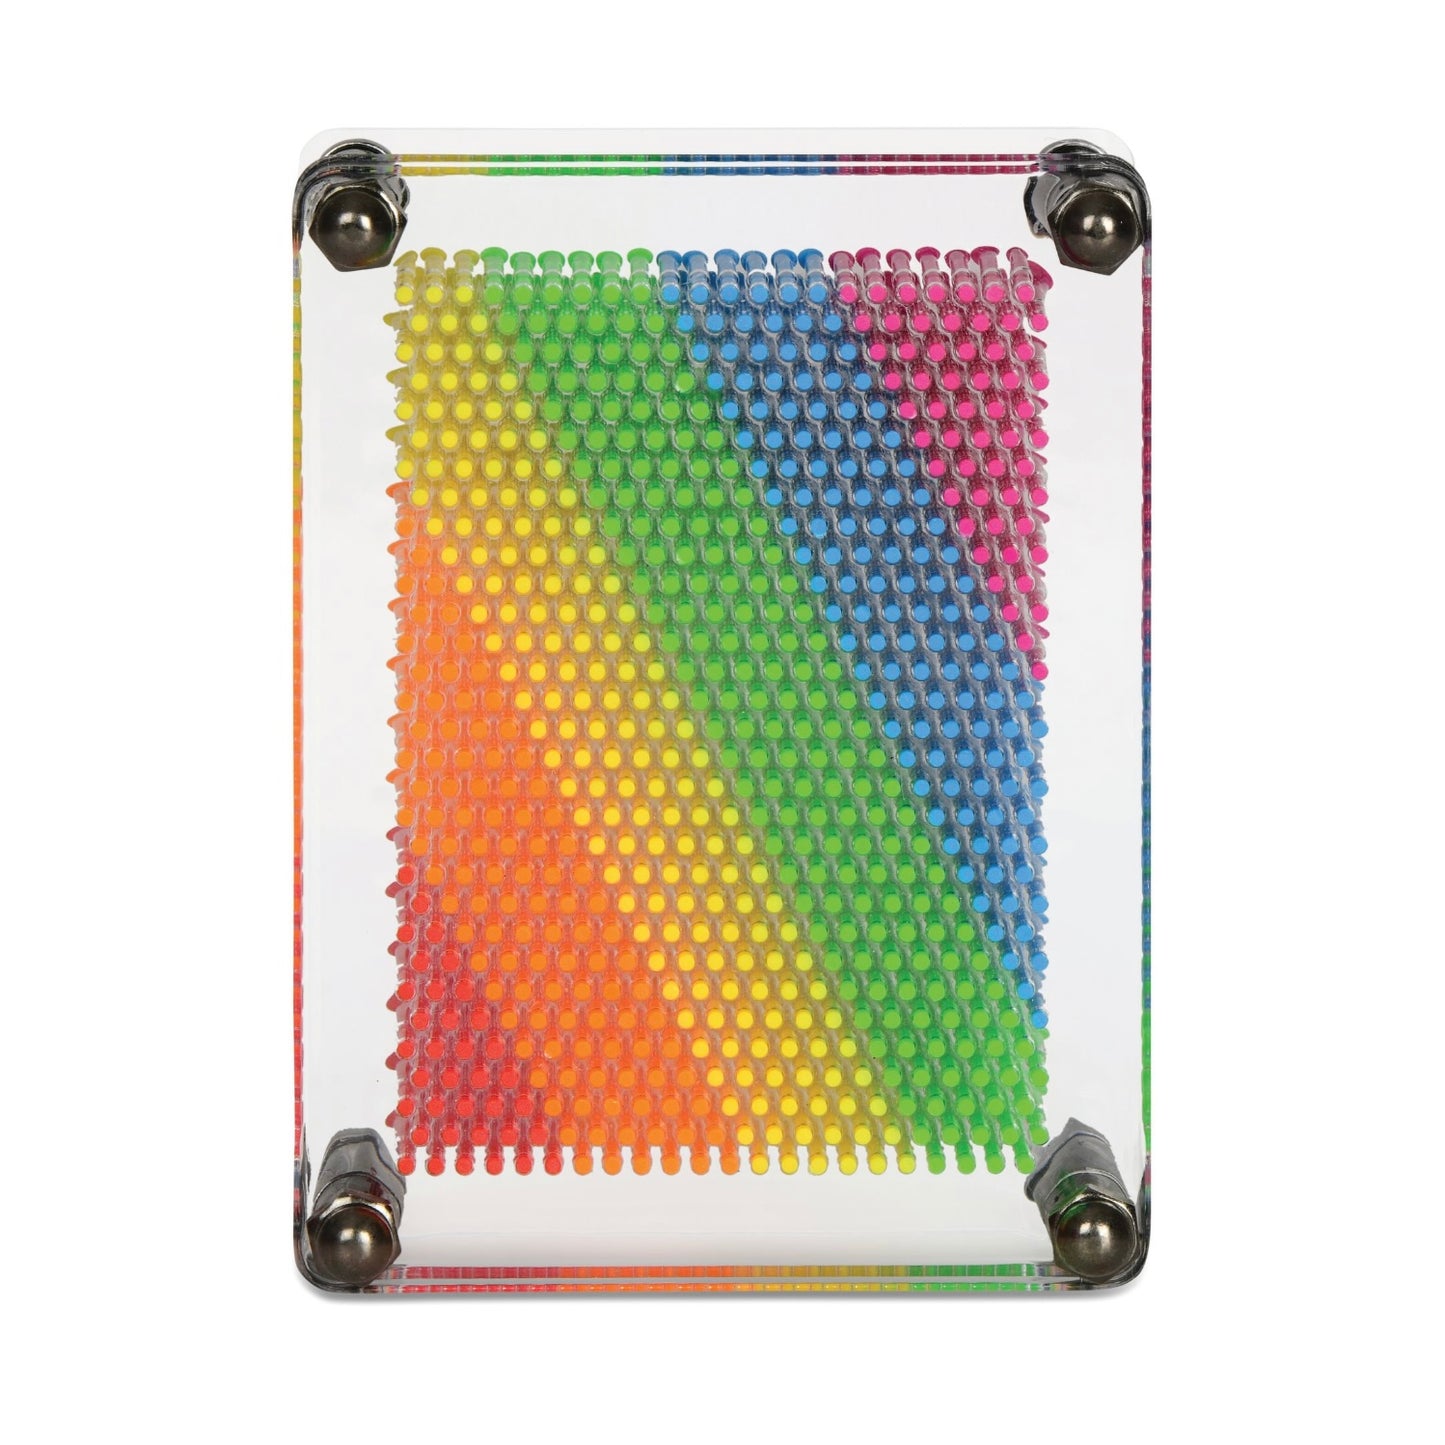 Razzle Dazzle DIY Gem Art Kit - Rad Rainbow - Imagine That Toys